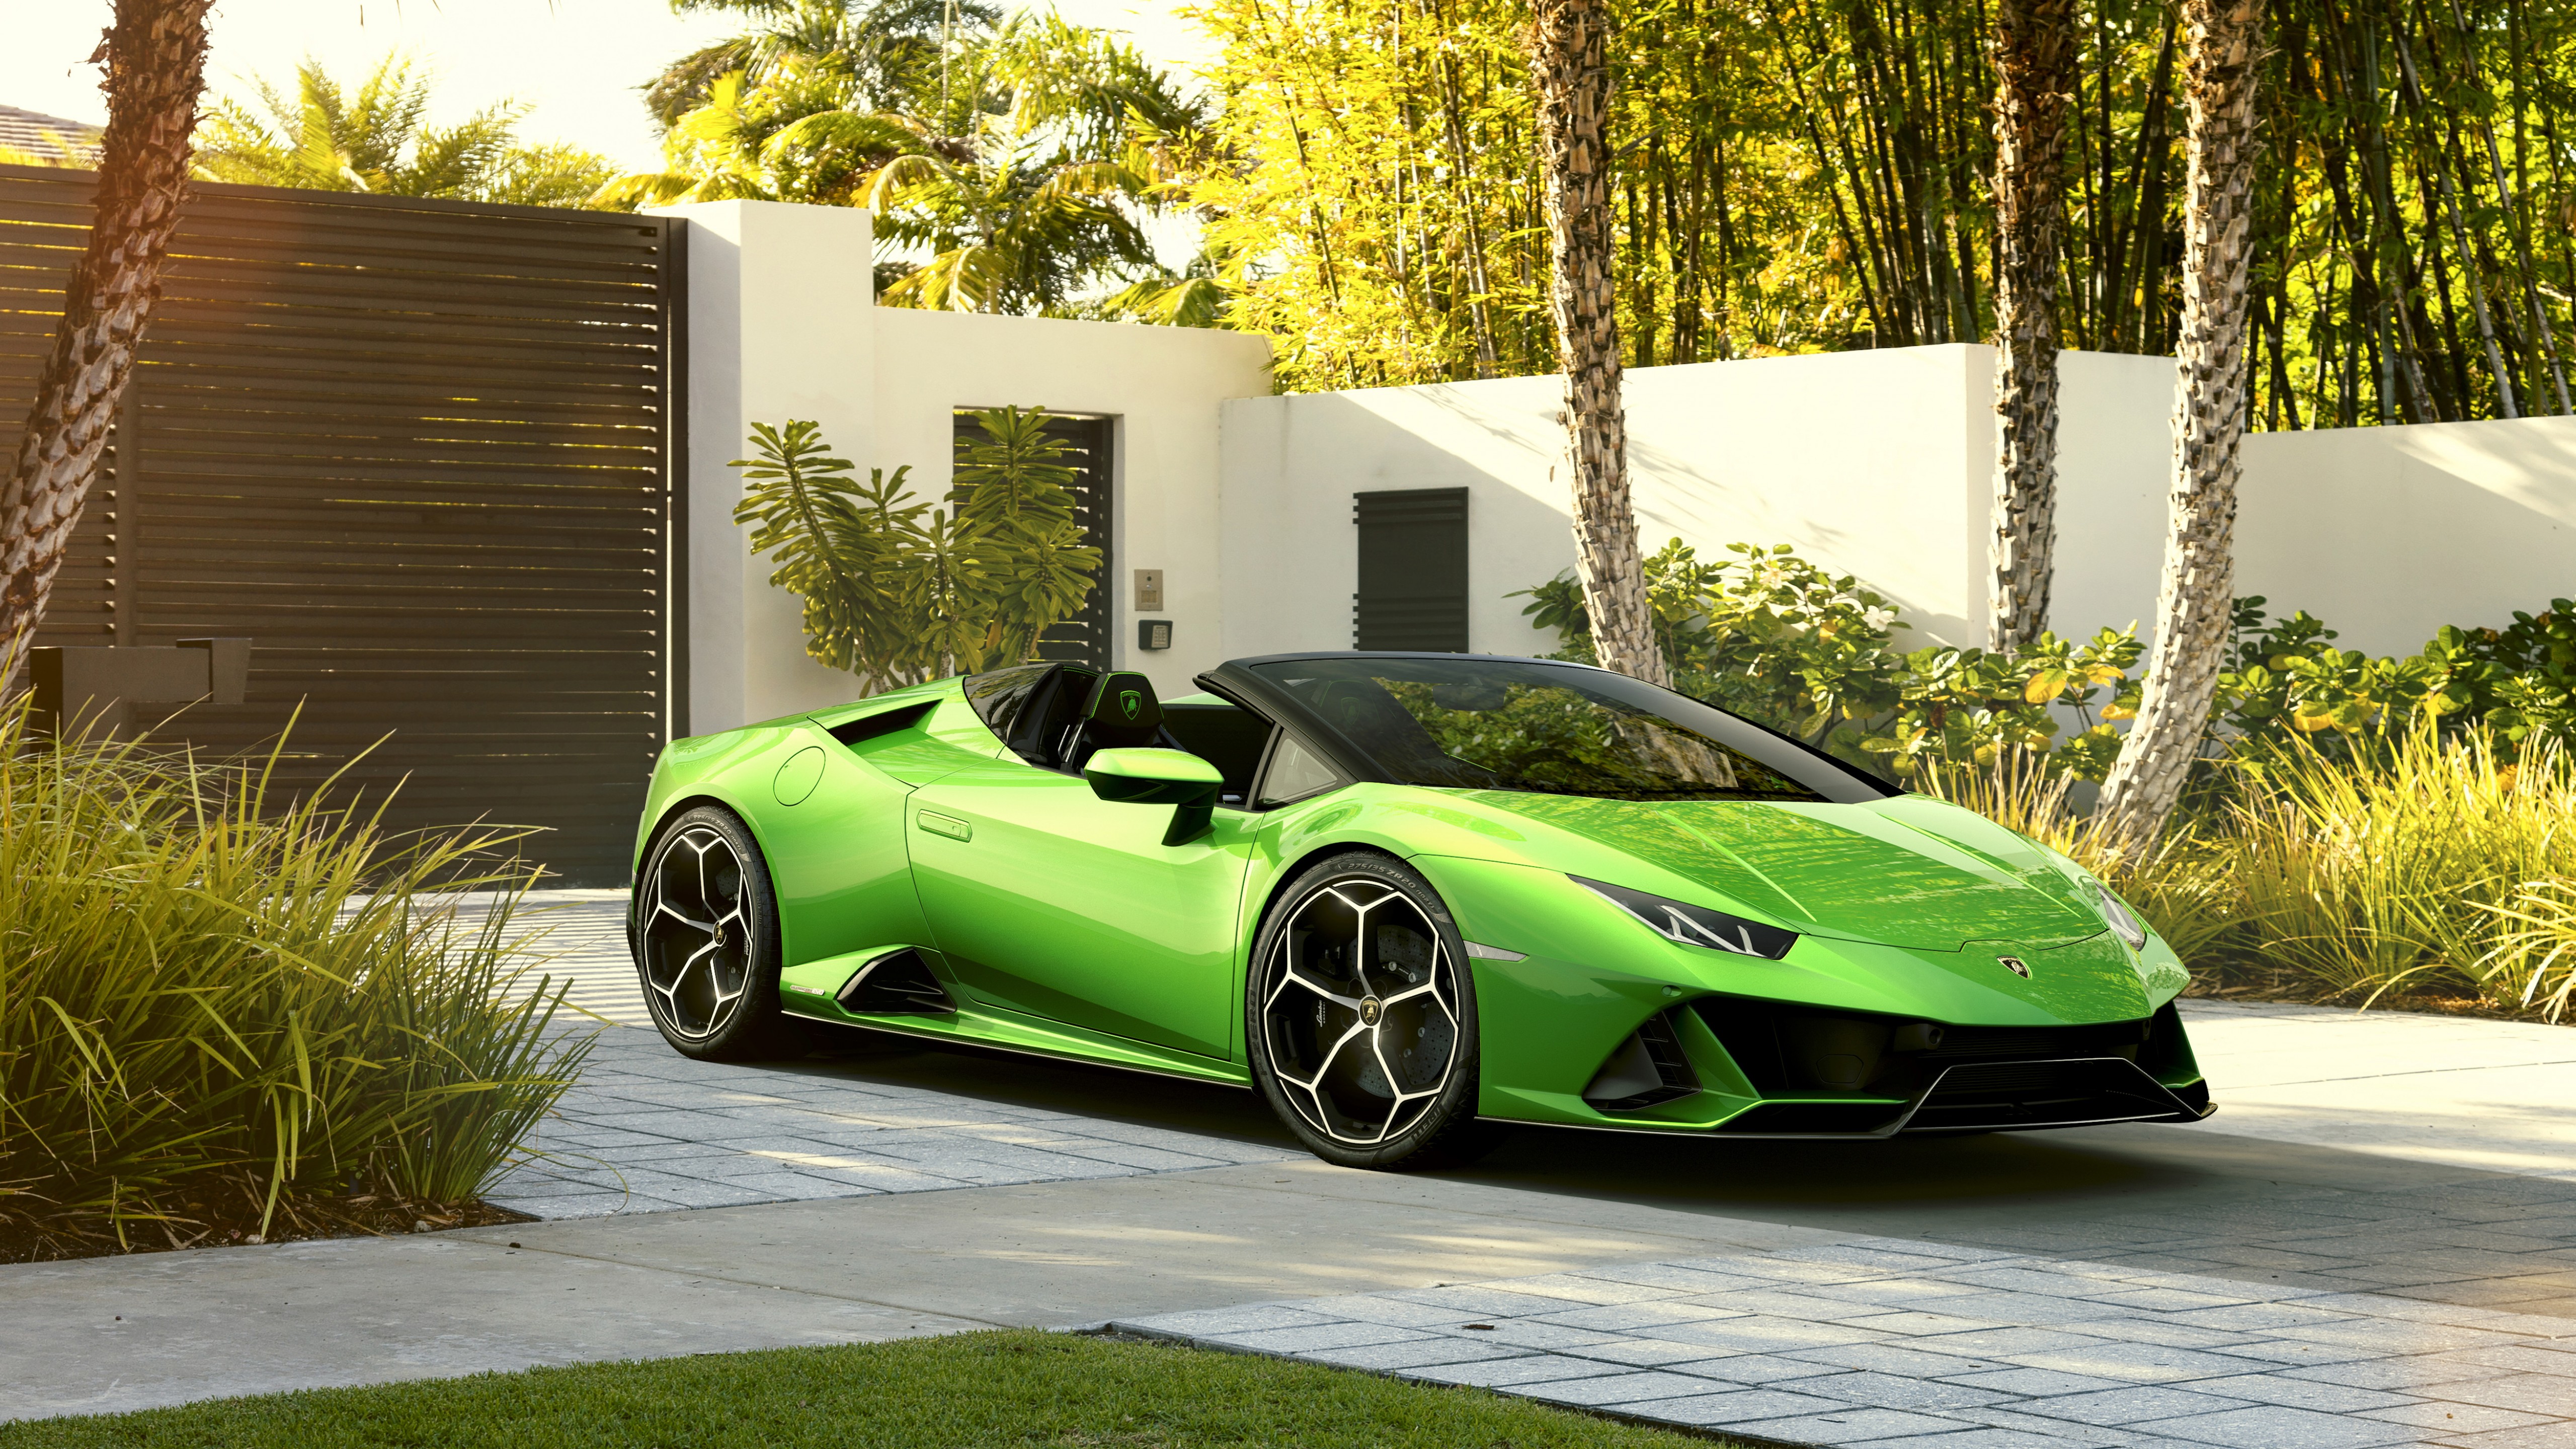 General 5120x2880 2019 (year) vehicle sports car green cars sunlight Lamborghini Lamborghini Huracan italian cars Volkswagen Group